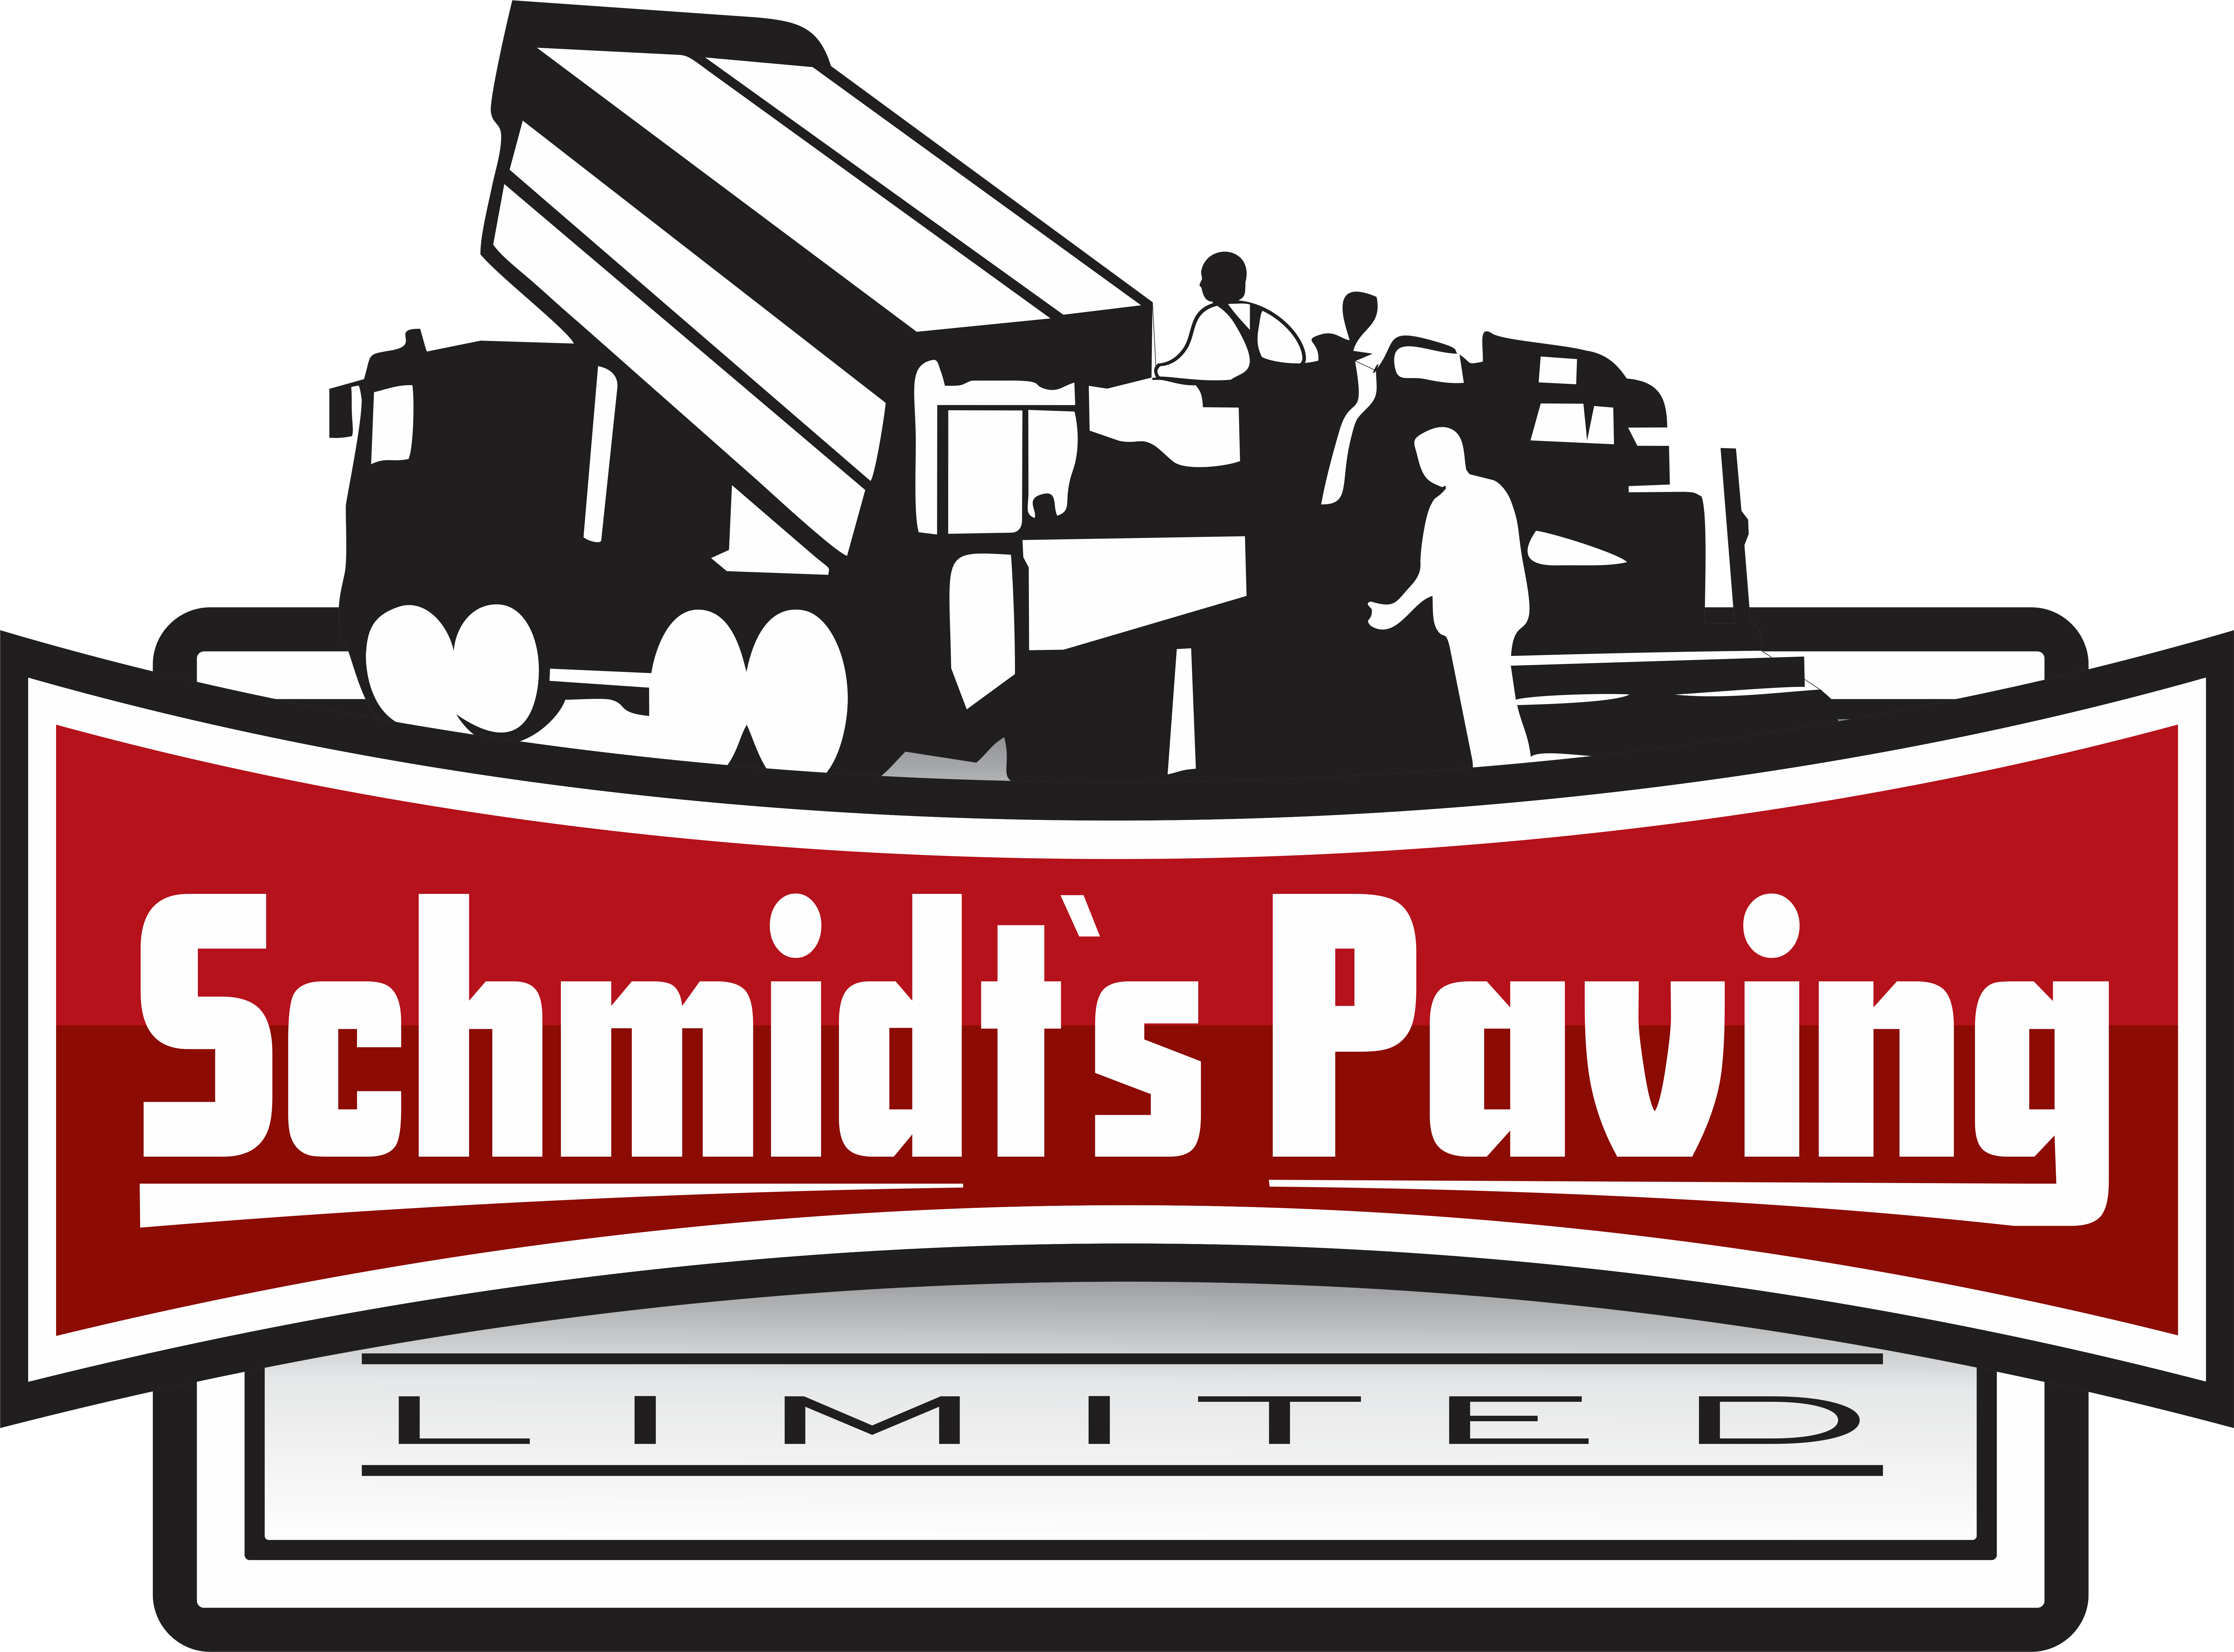 Schmidt's Paving Ltd